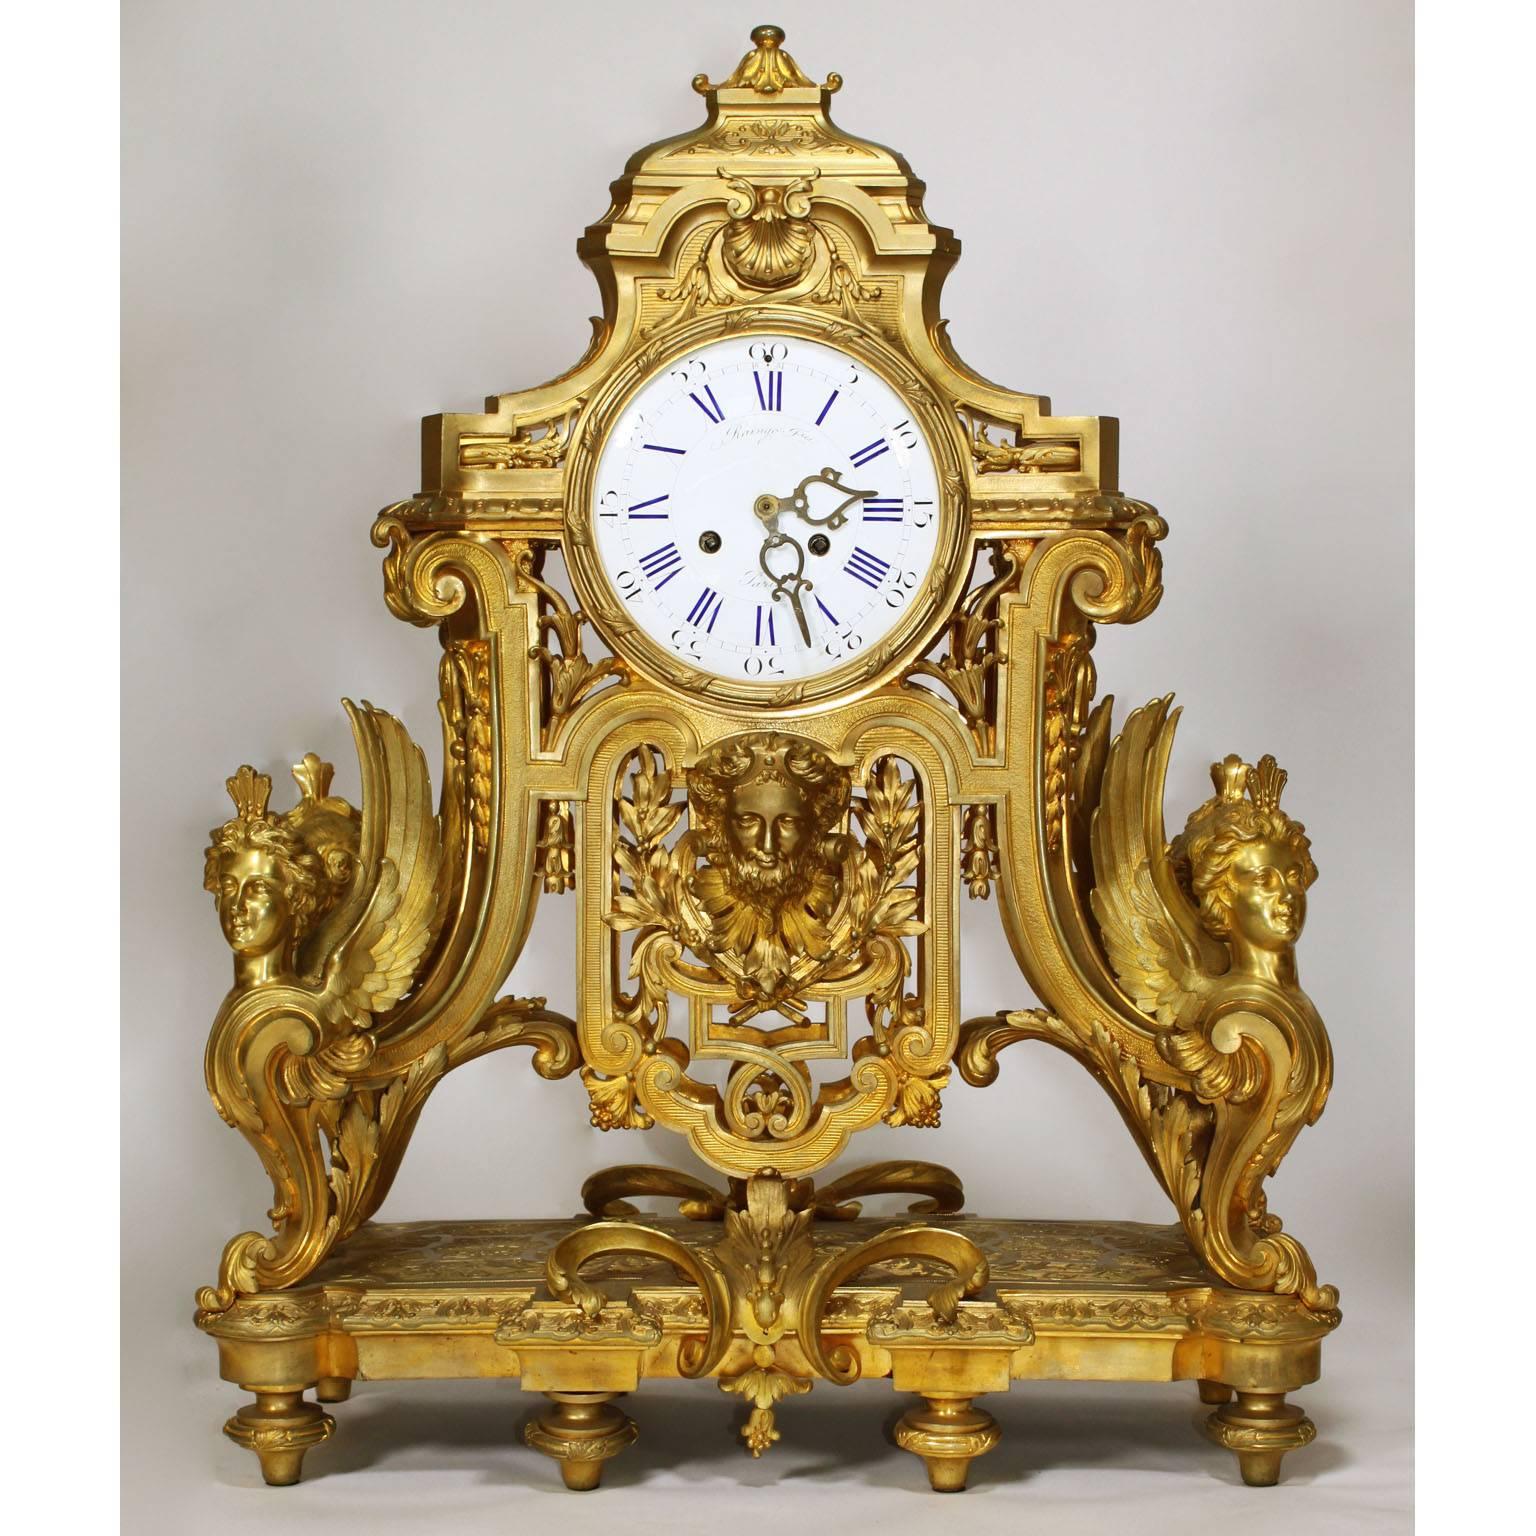 Eine sehr feine und palastartige französische Uhr- und Kandelaber-Garnitur im Stil Ludwigs XIV. des 19. Jahrhunderts, bestehend aus einer Uhr aus vergoldeter Bronze und einem Paar zehnflammiger Kandelaber. Die fein ziselierte Uhr aus vergoldeter